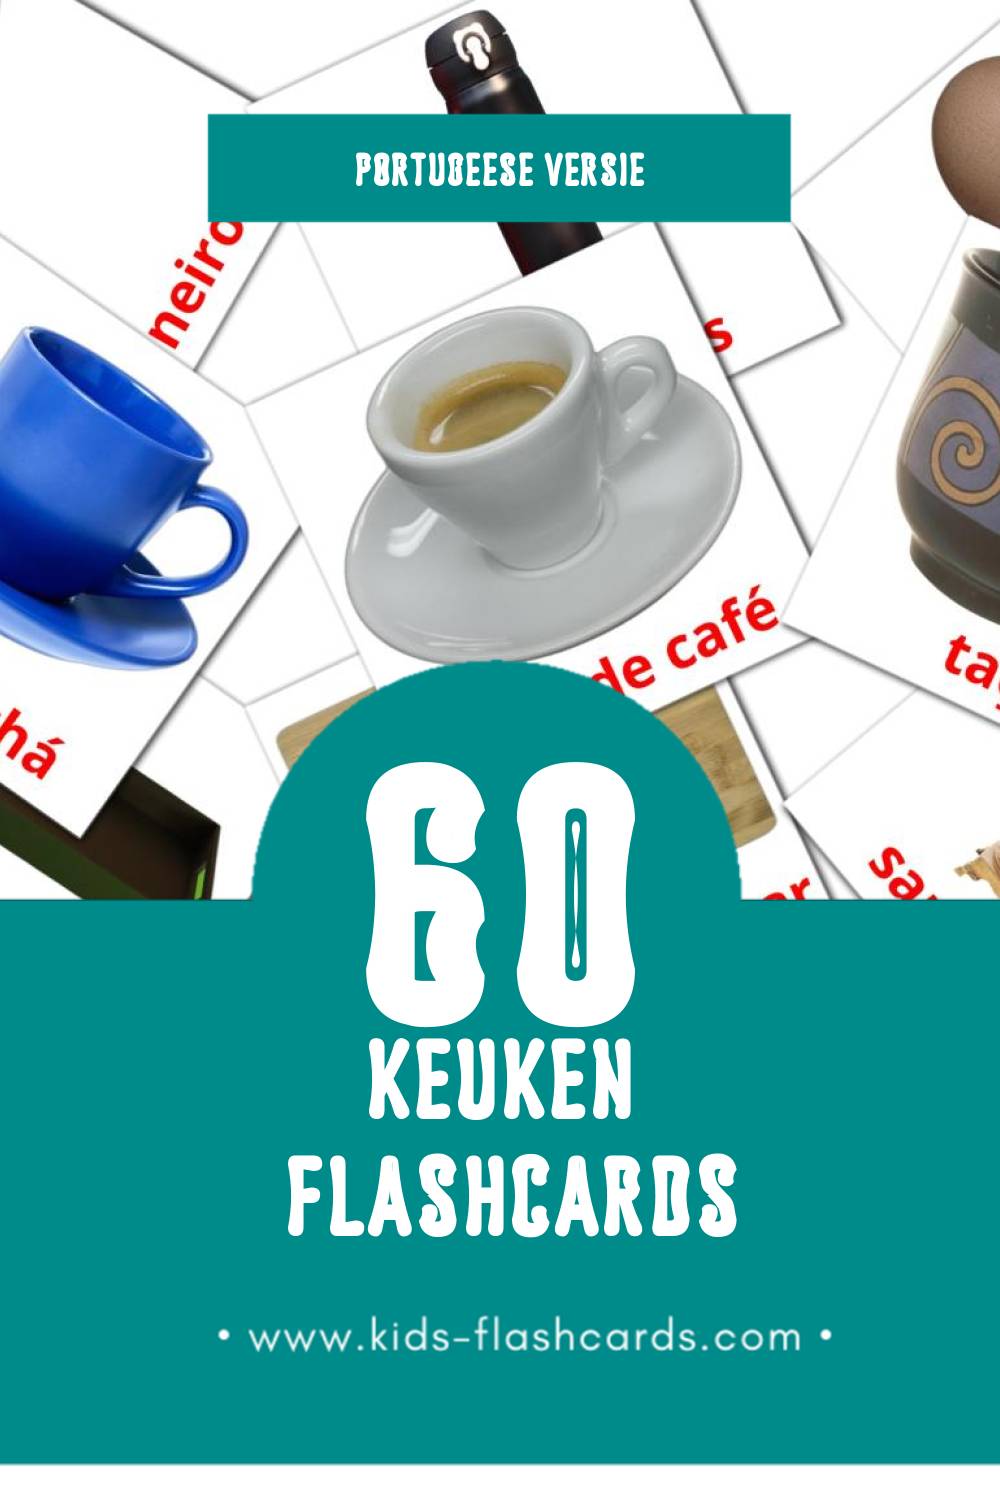 Visuele Cozinha Flashcards voor Kleuters (60 kaarten in het Portugees)